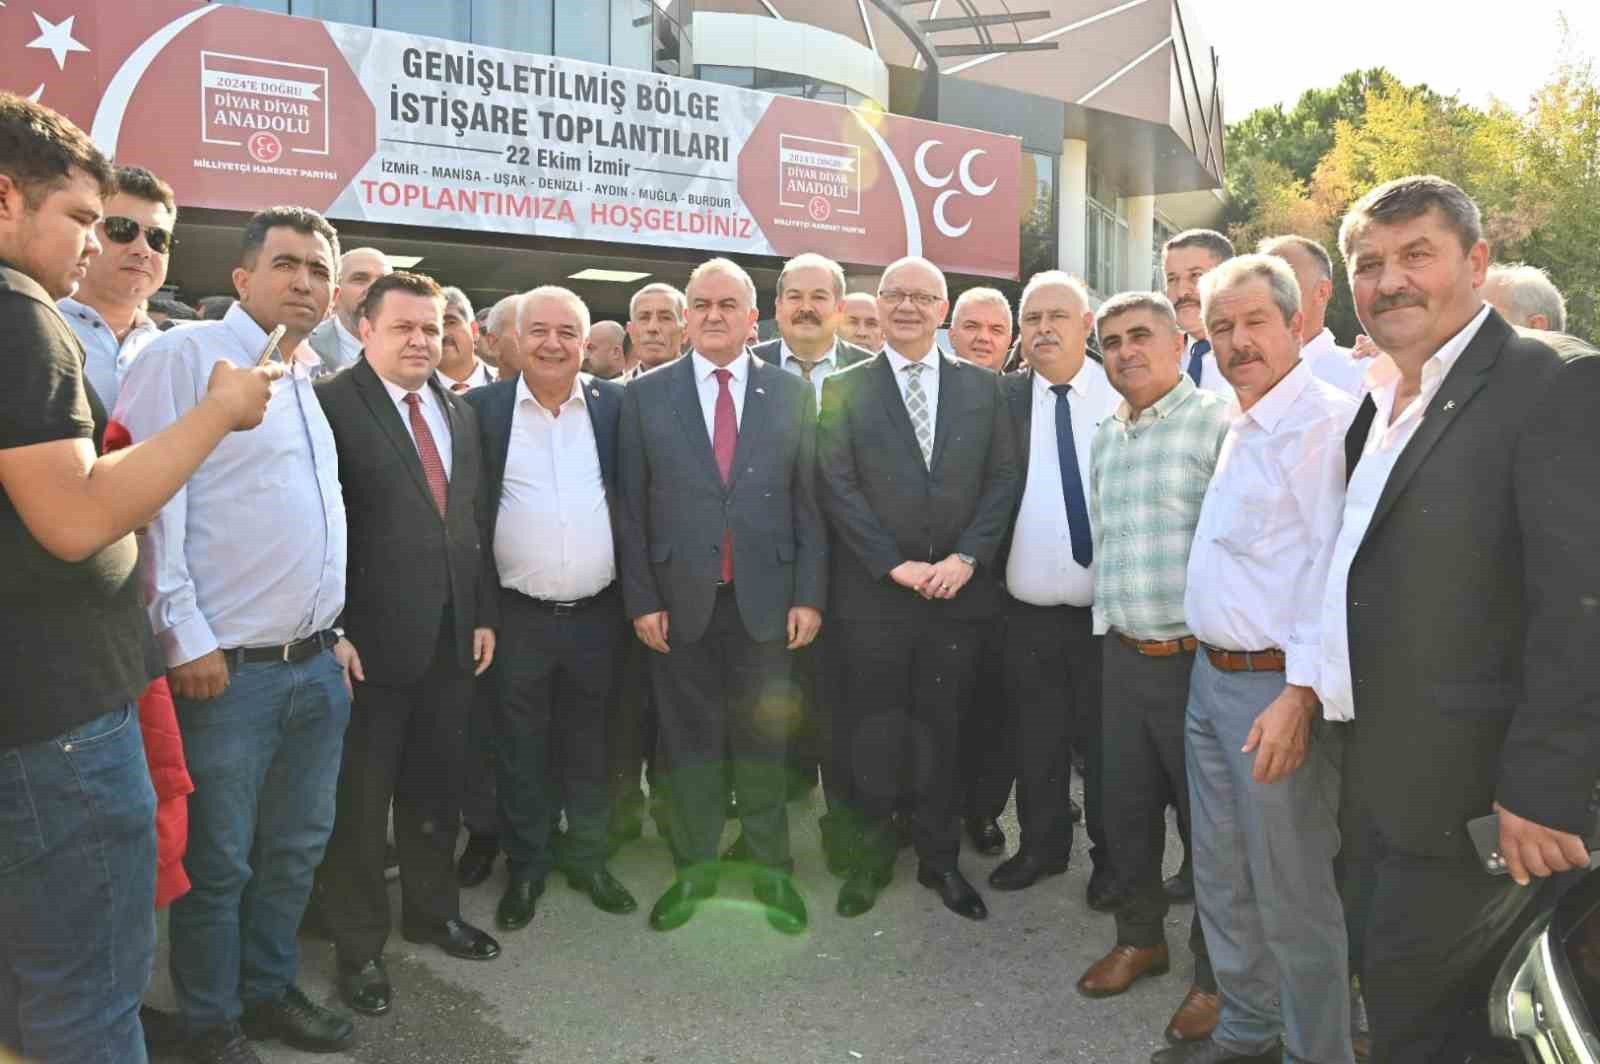 Başkan Ergün, İzmir’de Genişletilmiş Bölge İstişare Toplantısına katıldı